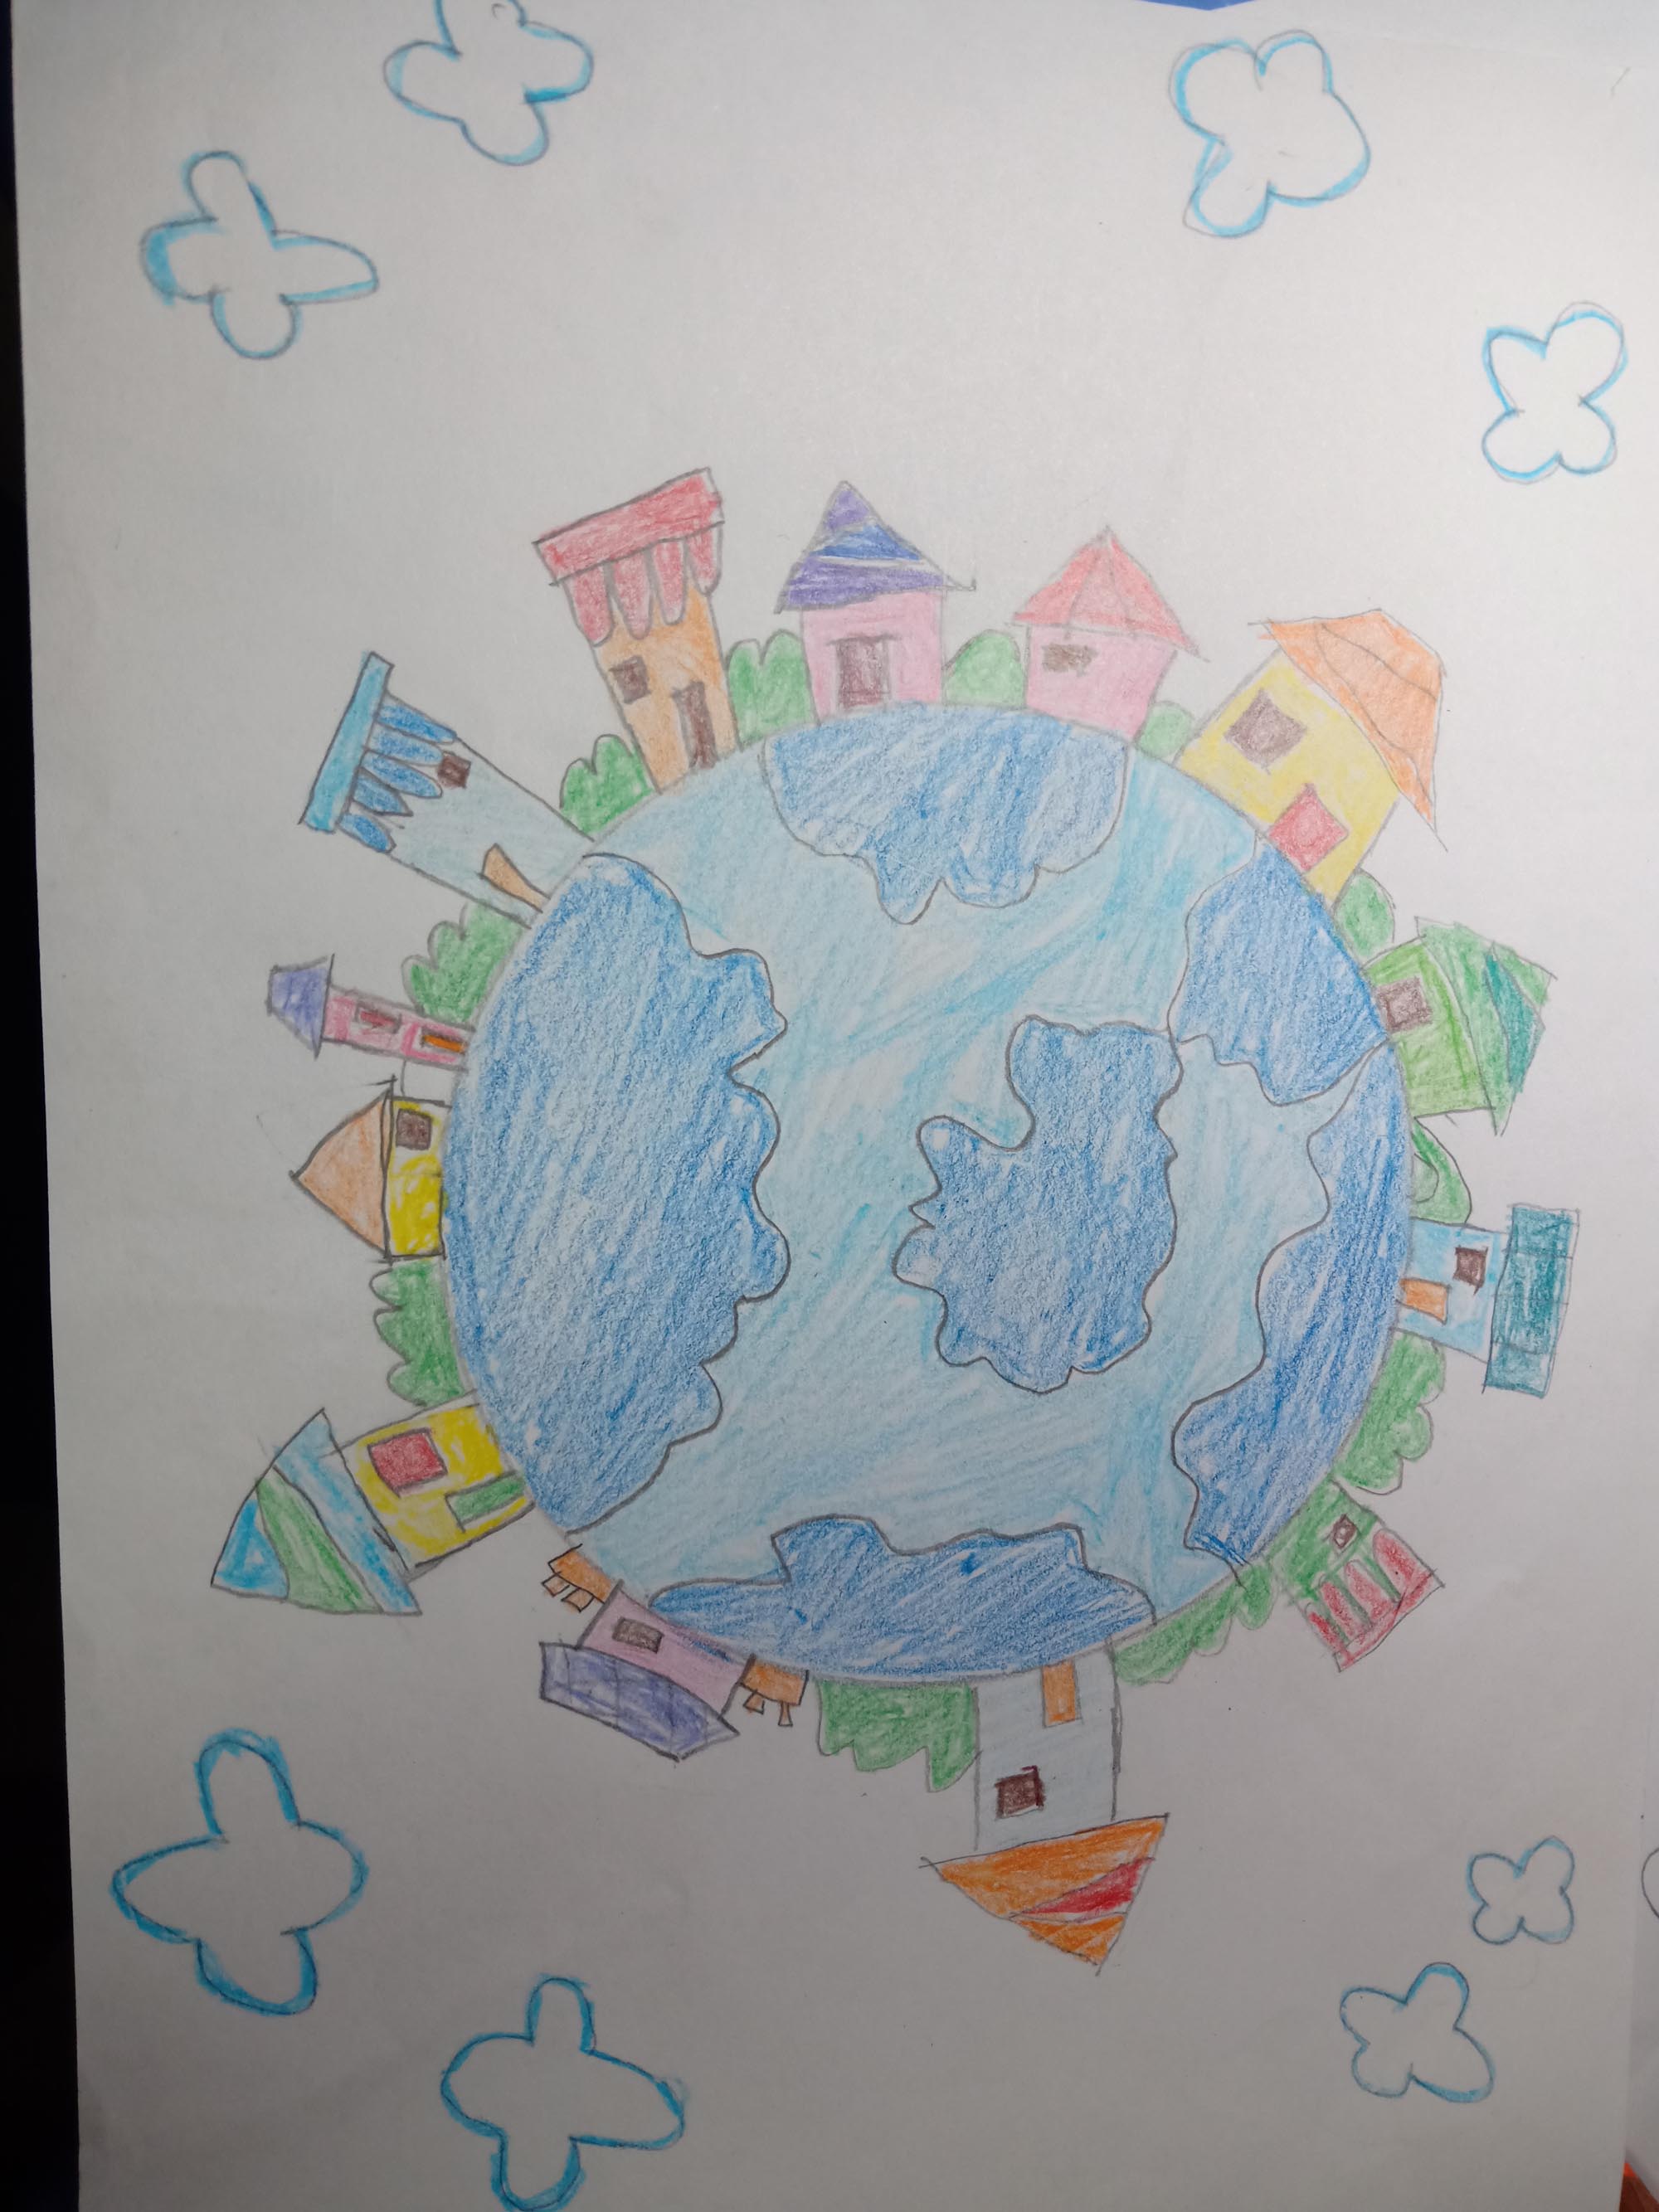 快乐儿童节，下一代龙净人的环保梦。获奖作品：《同住蓝色星球，共筑美丽家园》曹烜赫 6岁